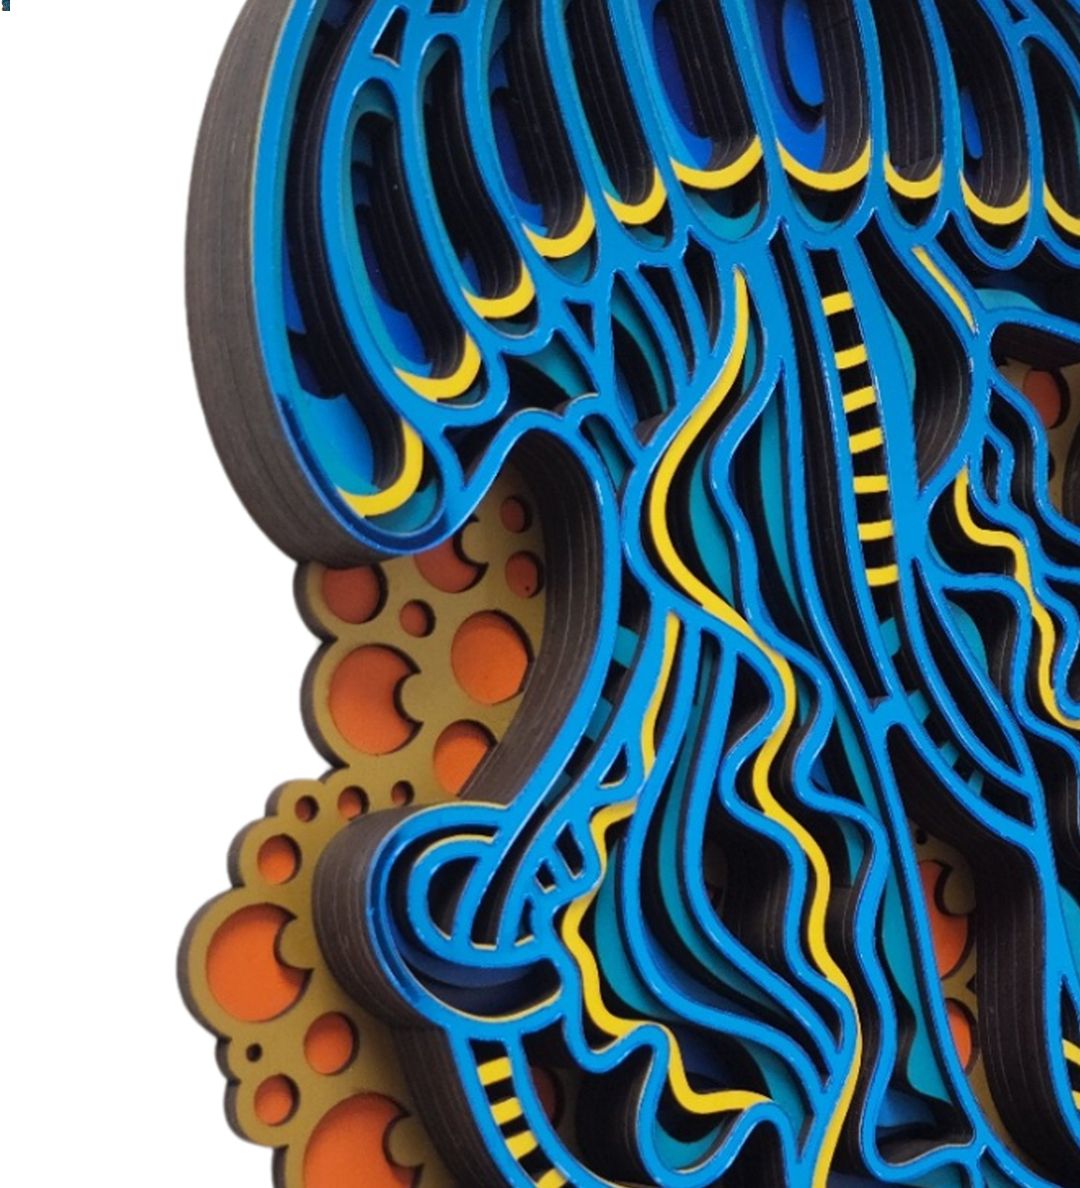 3D Jelly Fish Mandala Art Wall Decor - CNUS000249